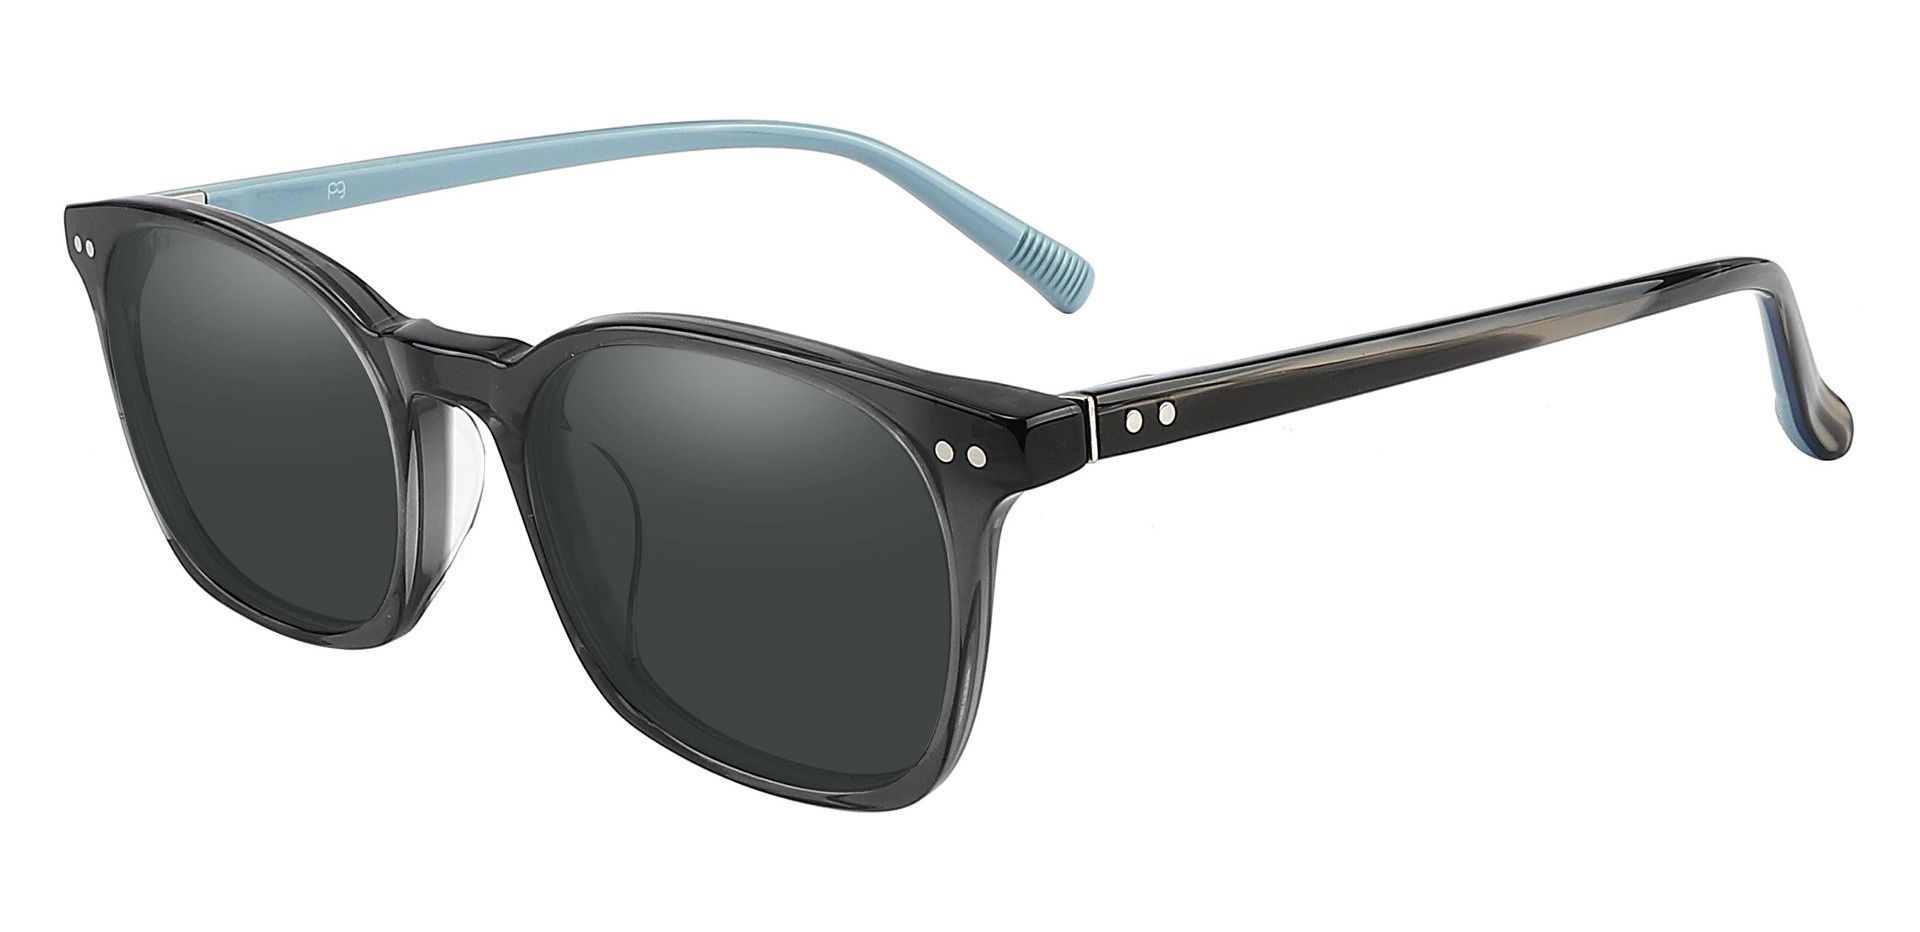 Alonzo Square Progressive Sunglasses - Gray Frame With Gray Lenses